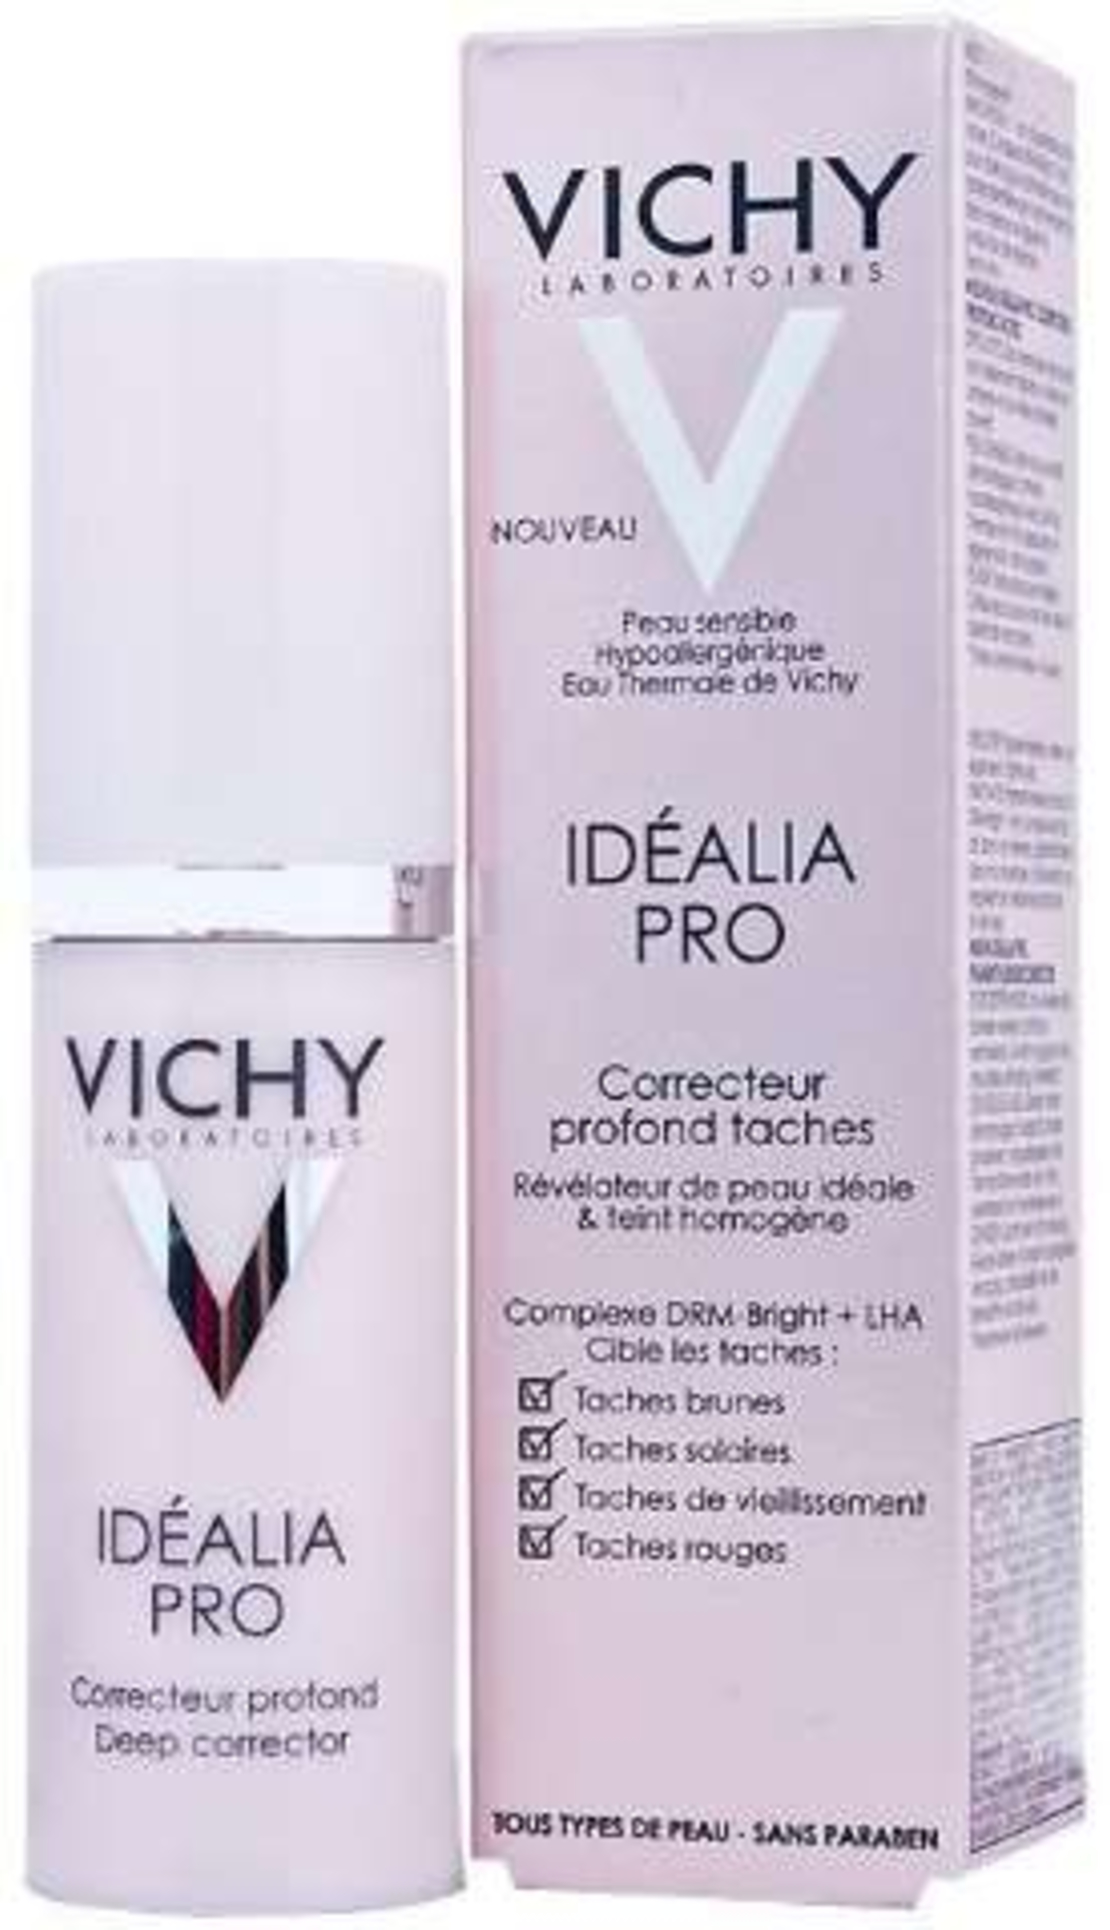 אידיאליה פרו וישי - לטיפול בכתמי עור Vichy Idealia Pro